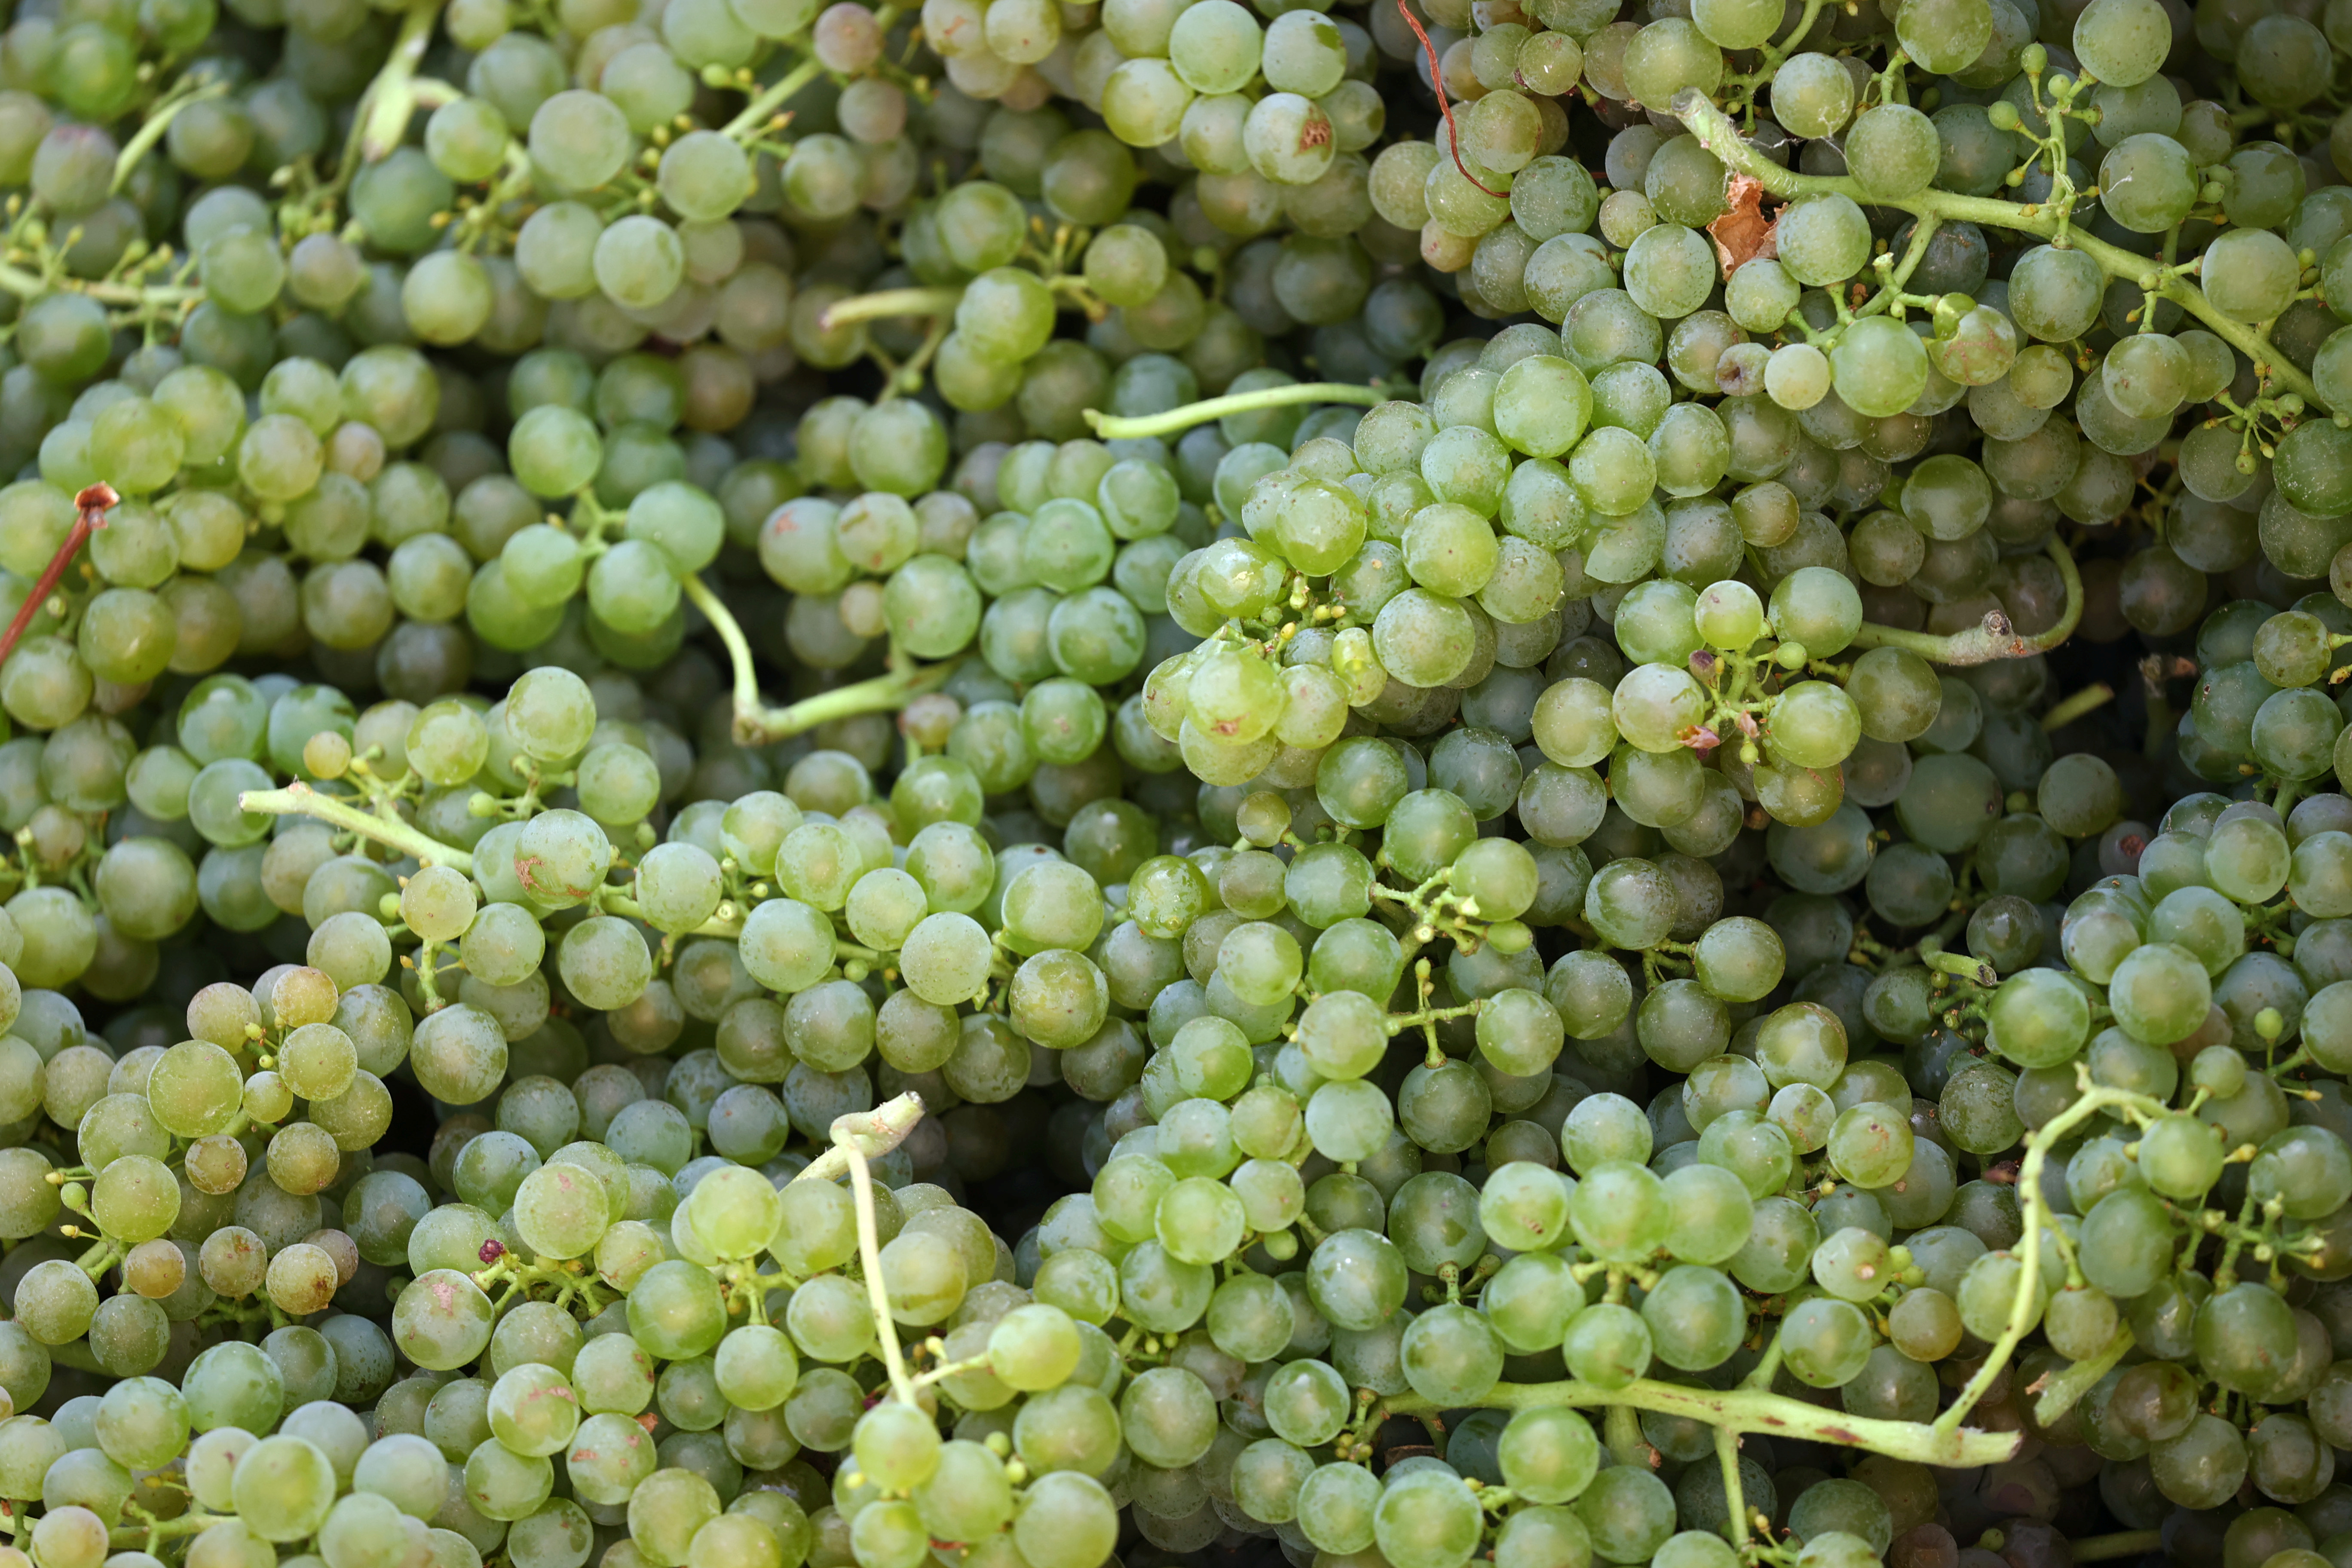 Las uvas ofrecen un sinfín de beneficios: son antioxidantes, diuréticas, depurativas, antiinflamatorias, reducen la fatiga y el estrés (REUTERS)